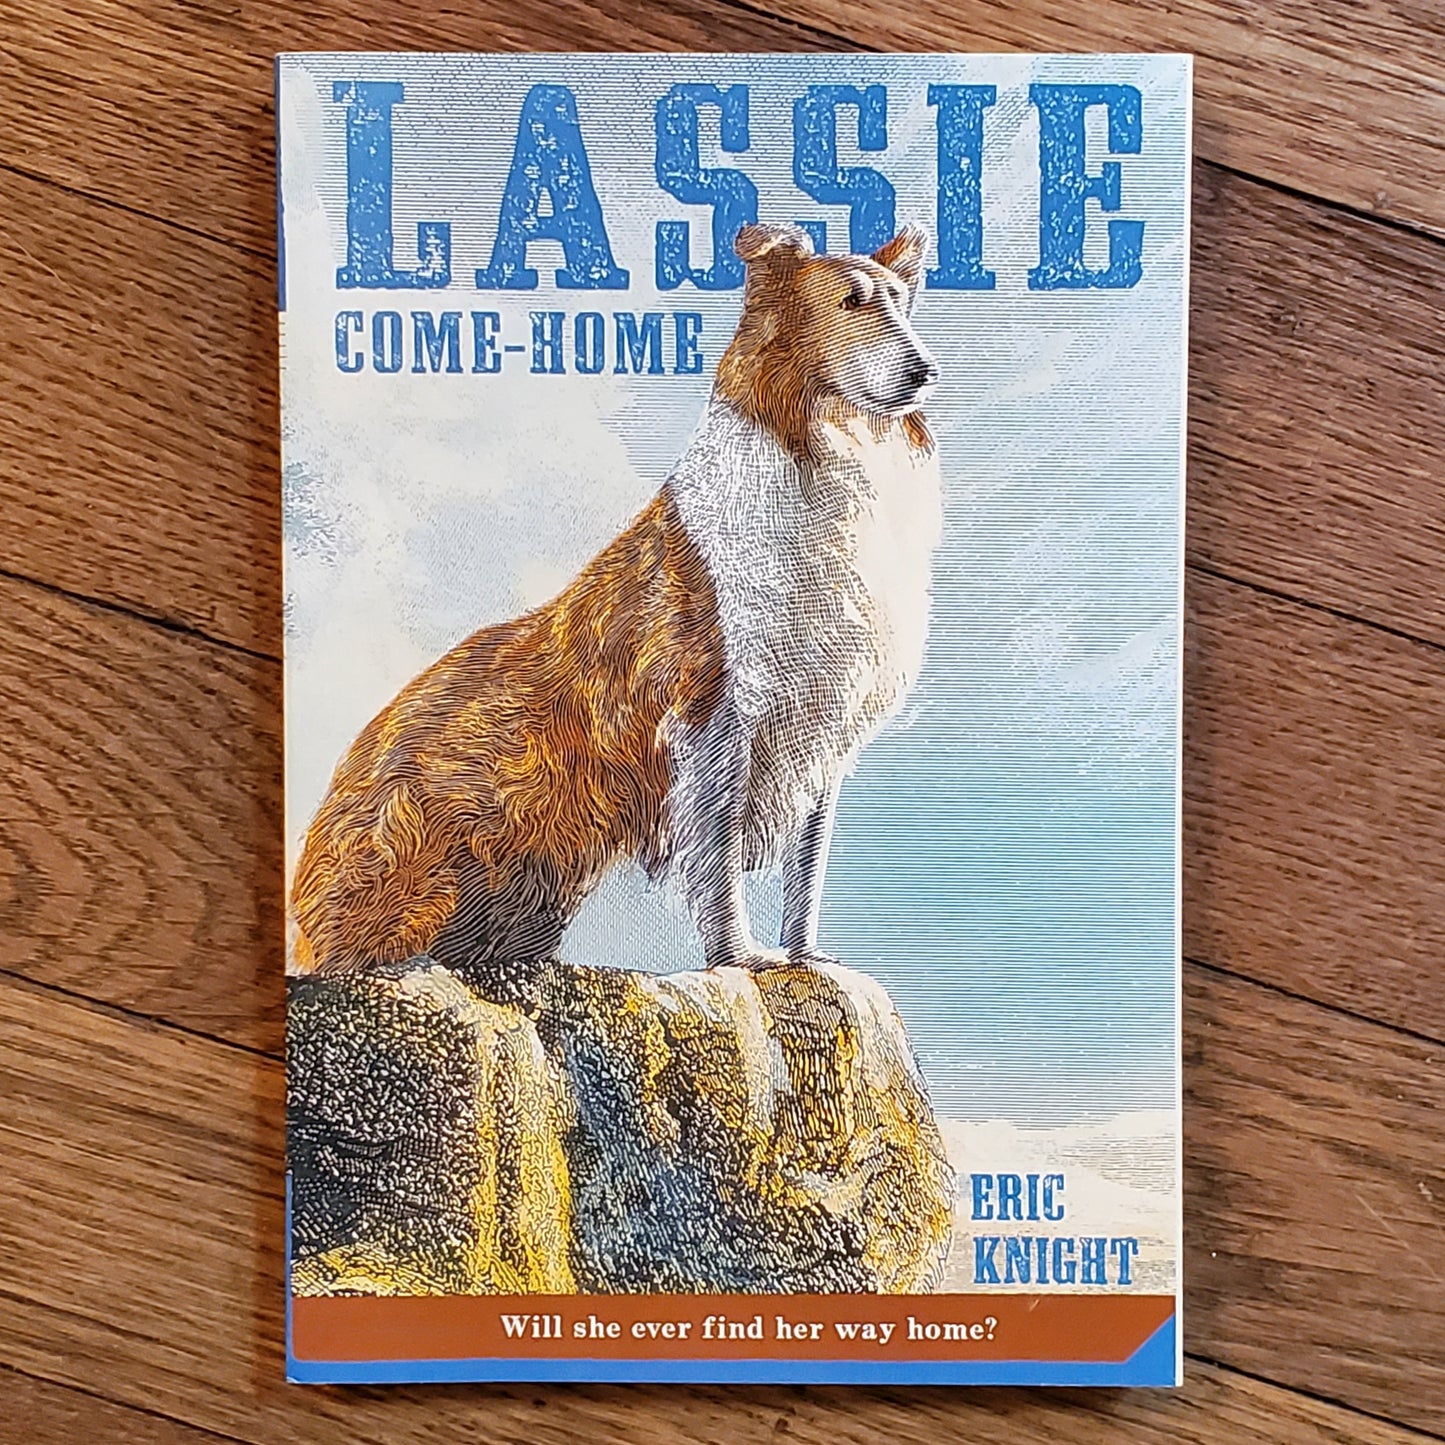 Lassie Come - Home